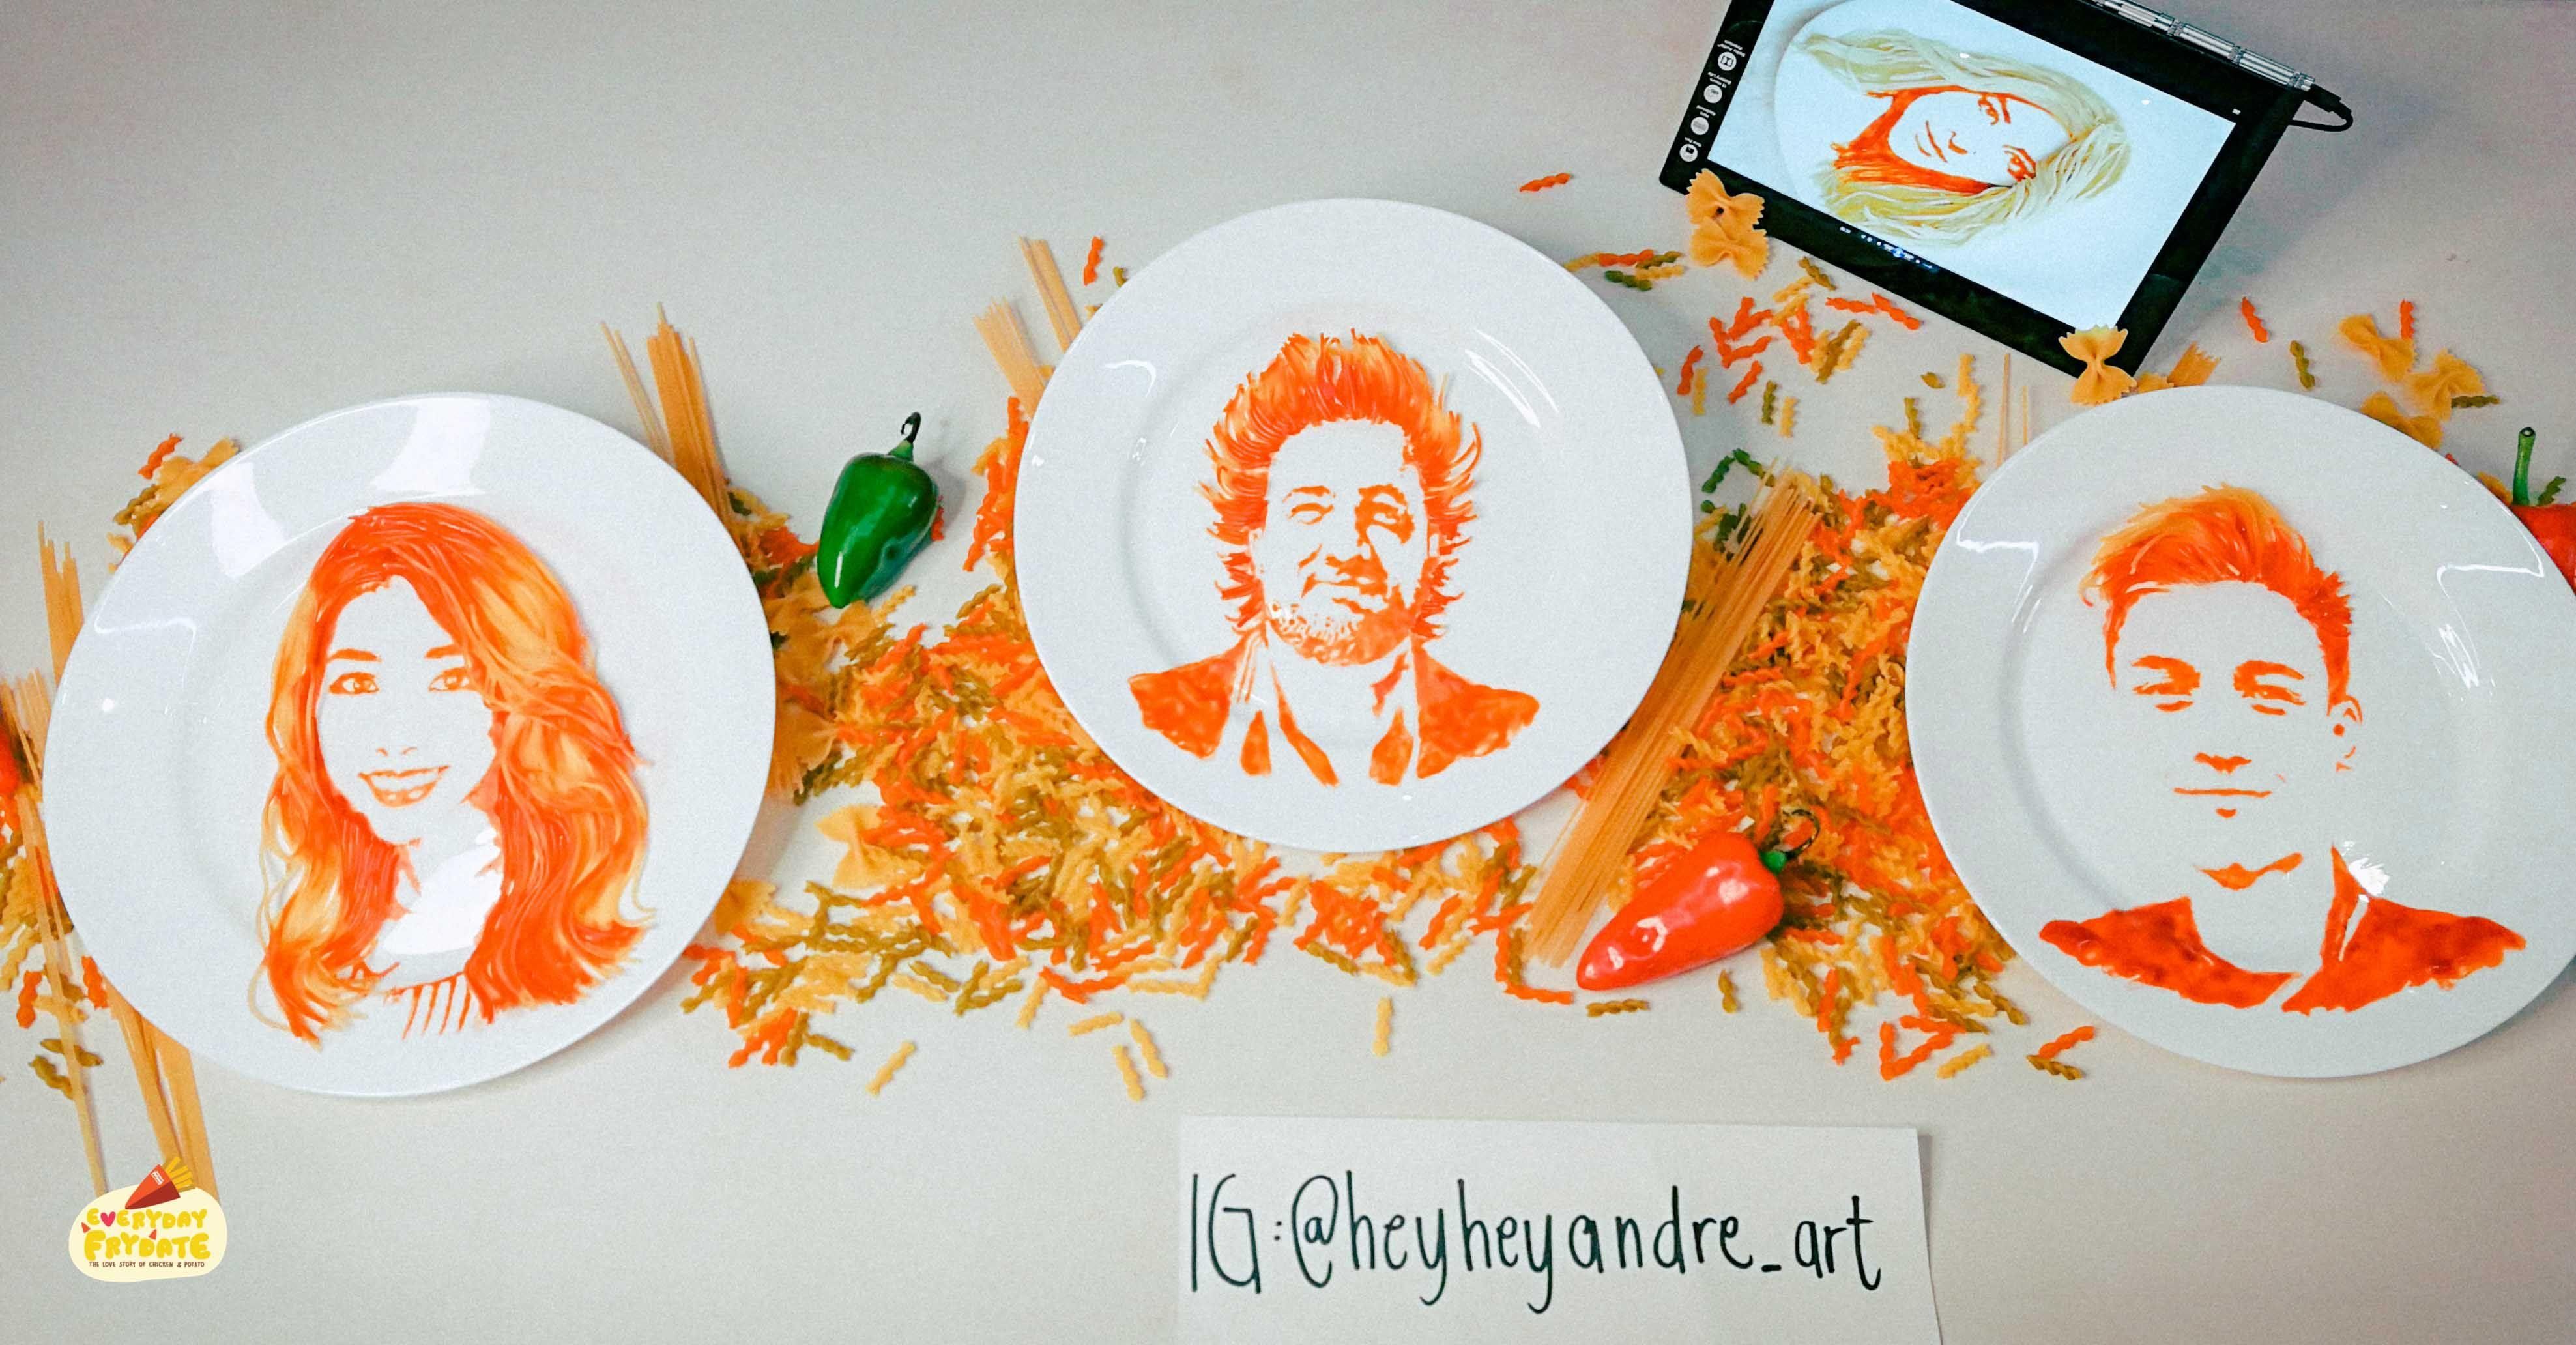 Художник рисует едой на тарелках: необычные картины